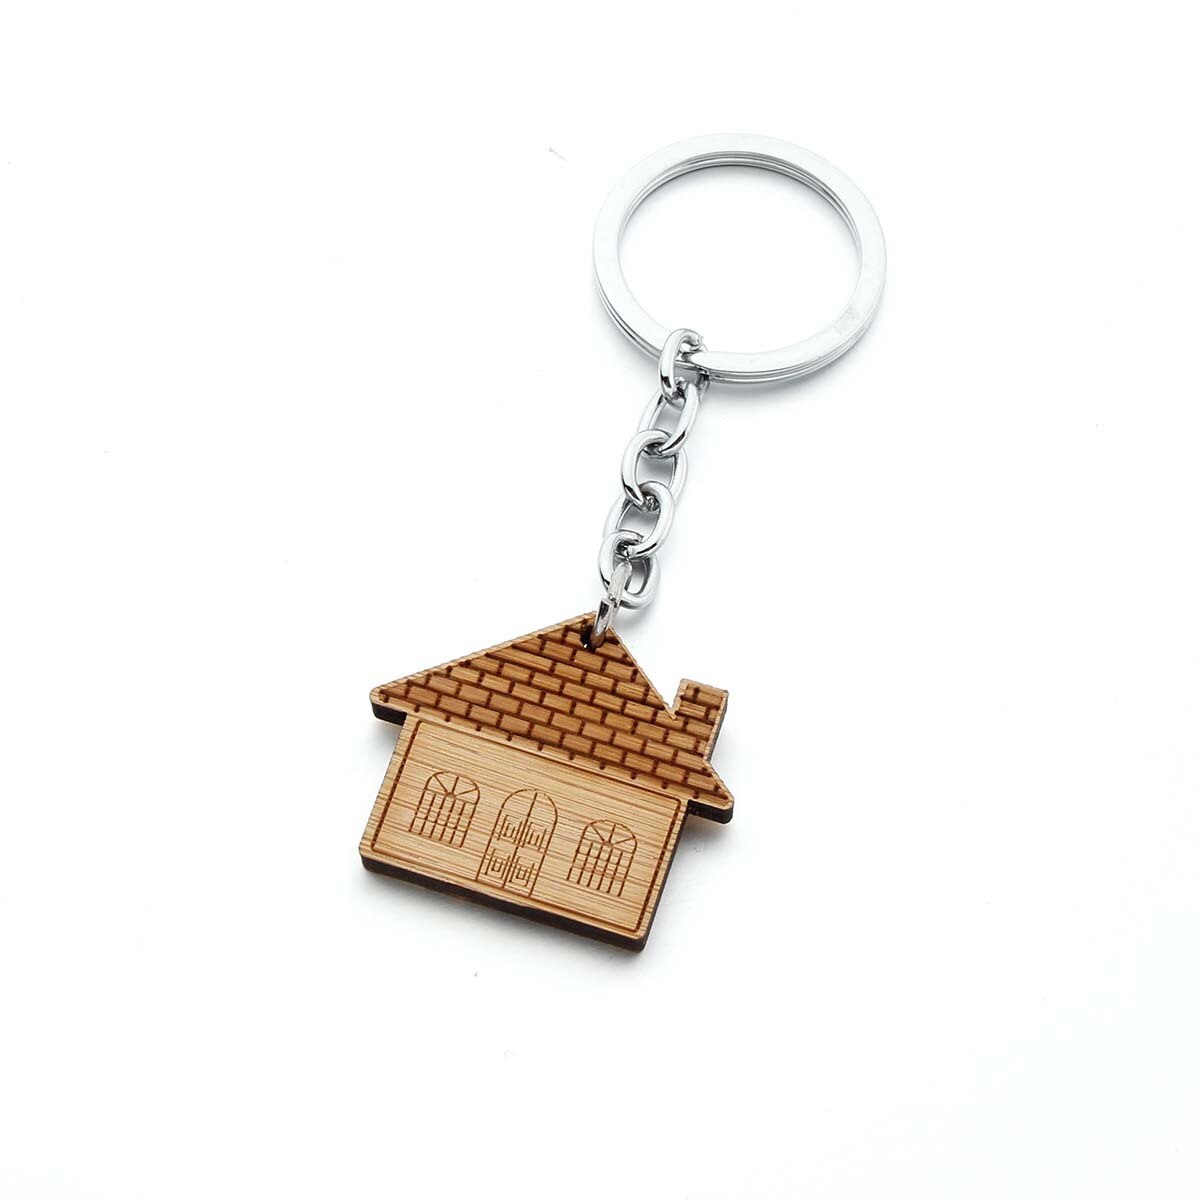 Aktuelt tilgængeligt salg nøgle spænde træ nøglering nøgle spænde hjem hus træ nøgle træ nøgle spænde nøgle spænde nøgle: Hus